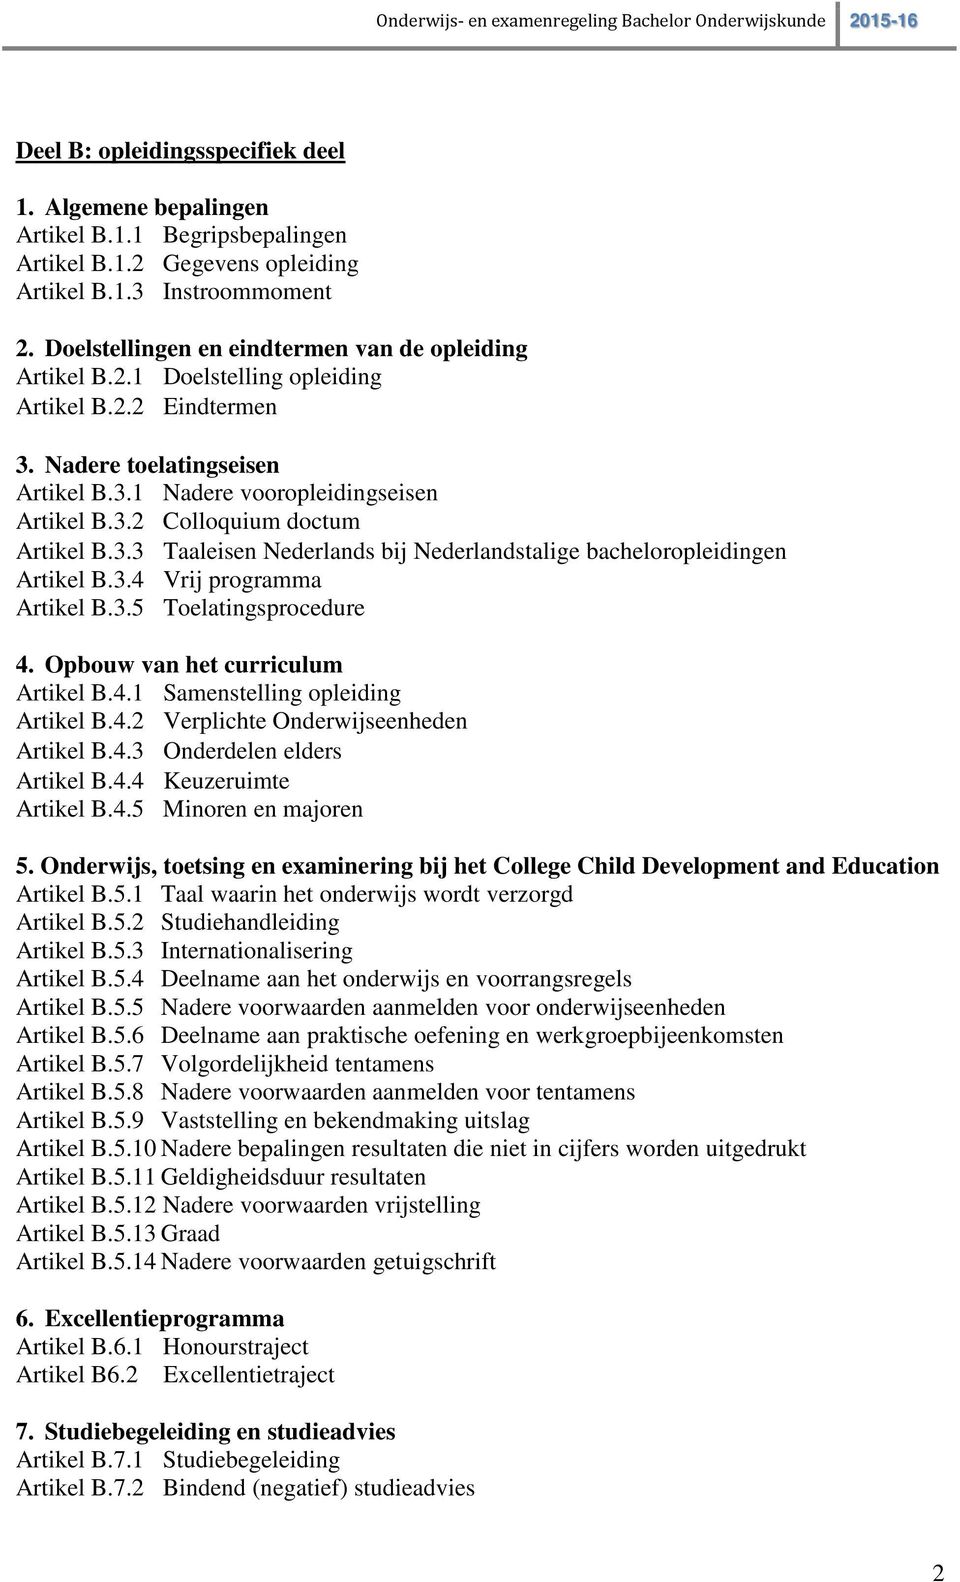 3.3 Taaleisen Nederlands bij Nederlandstalige bacheloropleidingen Artikel B.3.4 Vrij programma Artikel B.3.5 Toelatingsprocedure 4. Opbouw van het curriculum Artikel B.4.1 Samenstelling opleiding Artikel B.